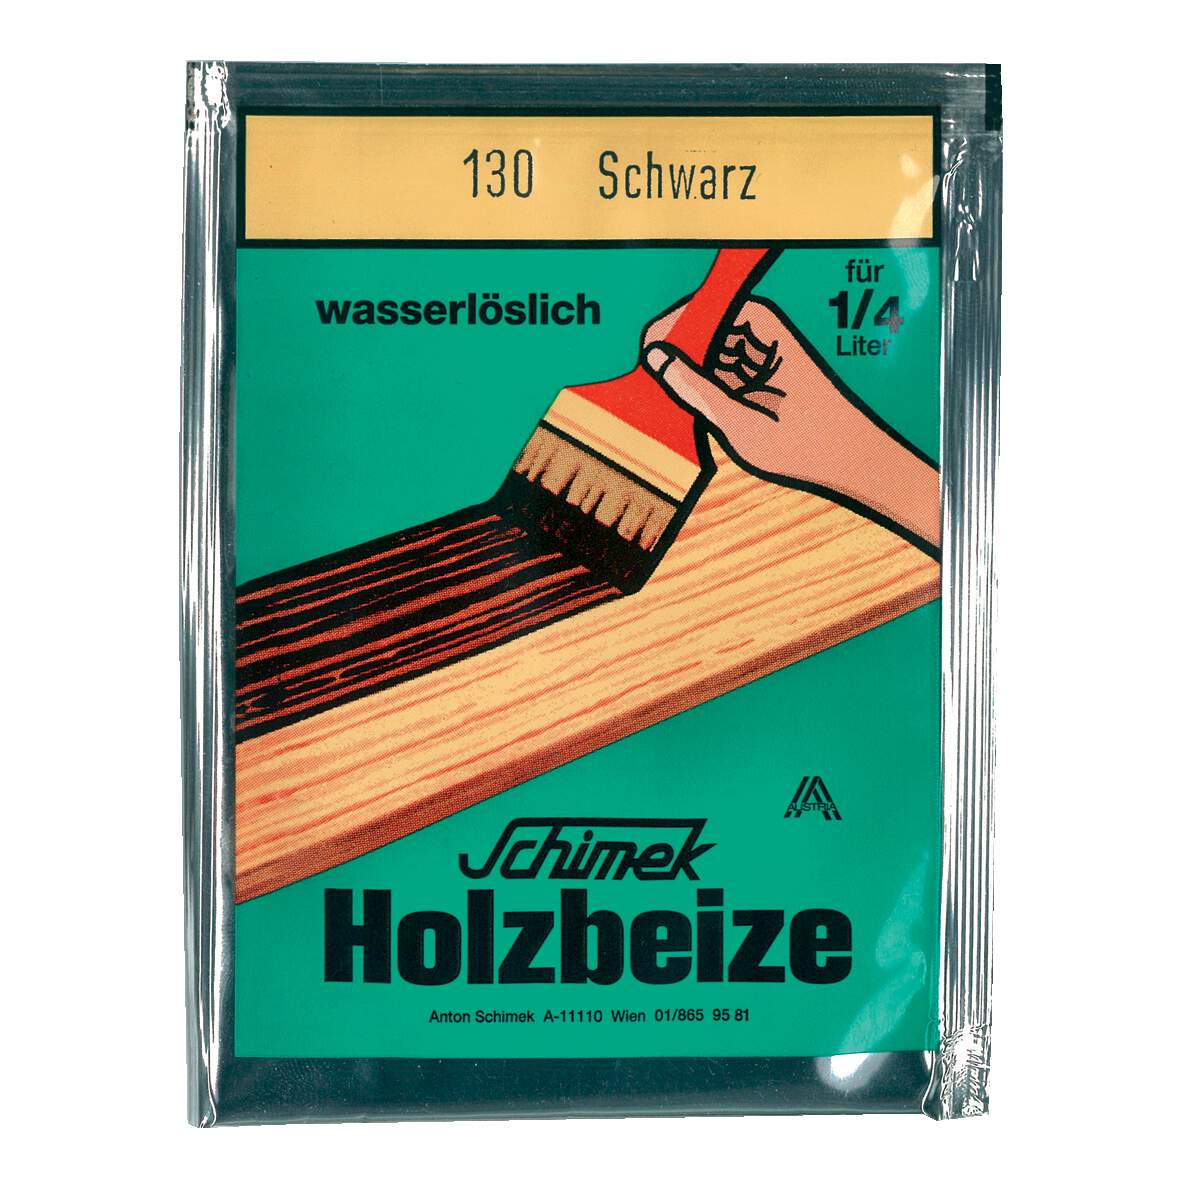 1216618 - Holzbeize wasserlöslich